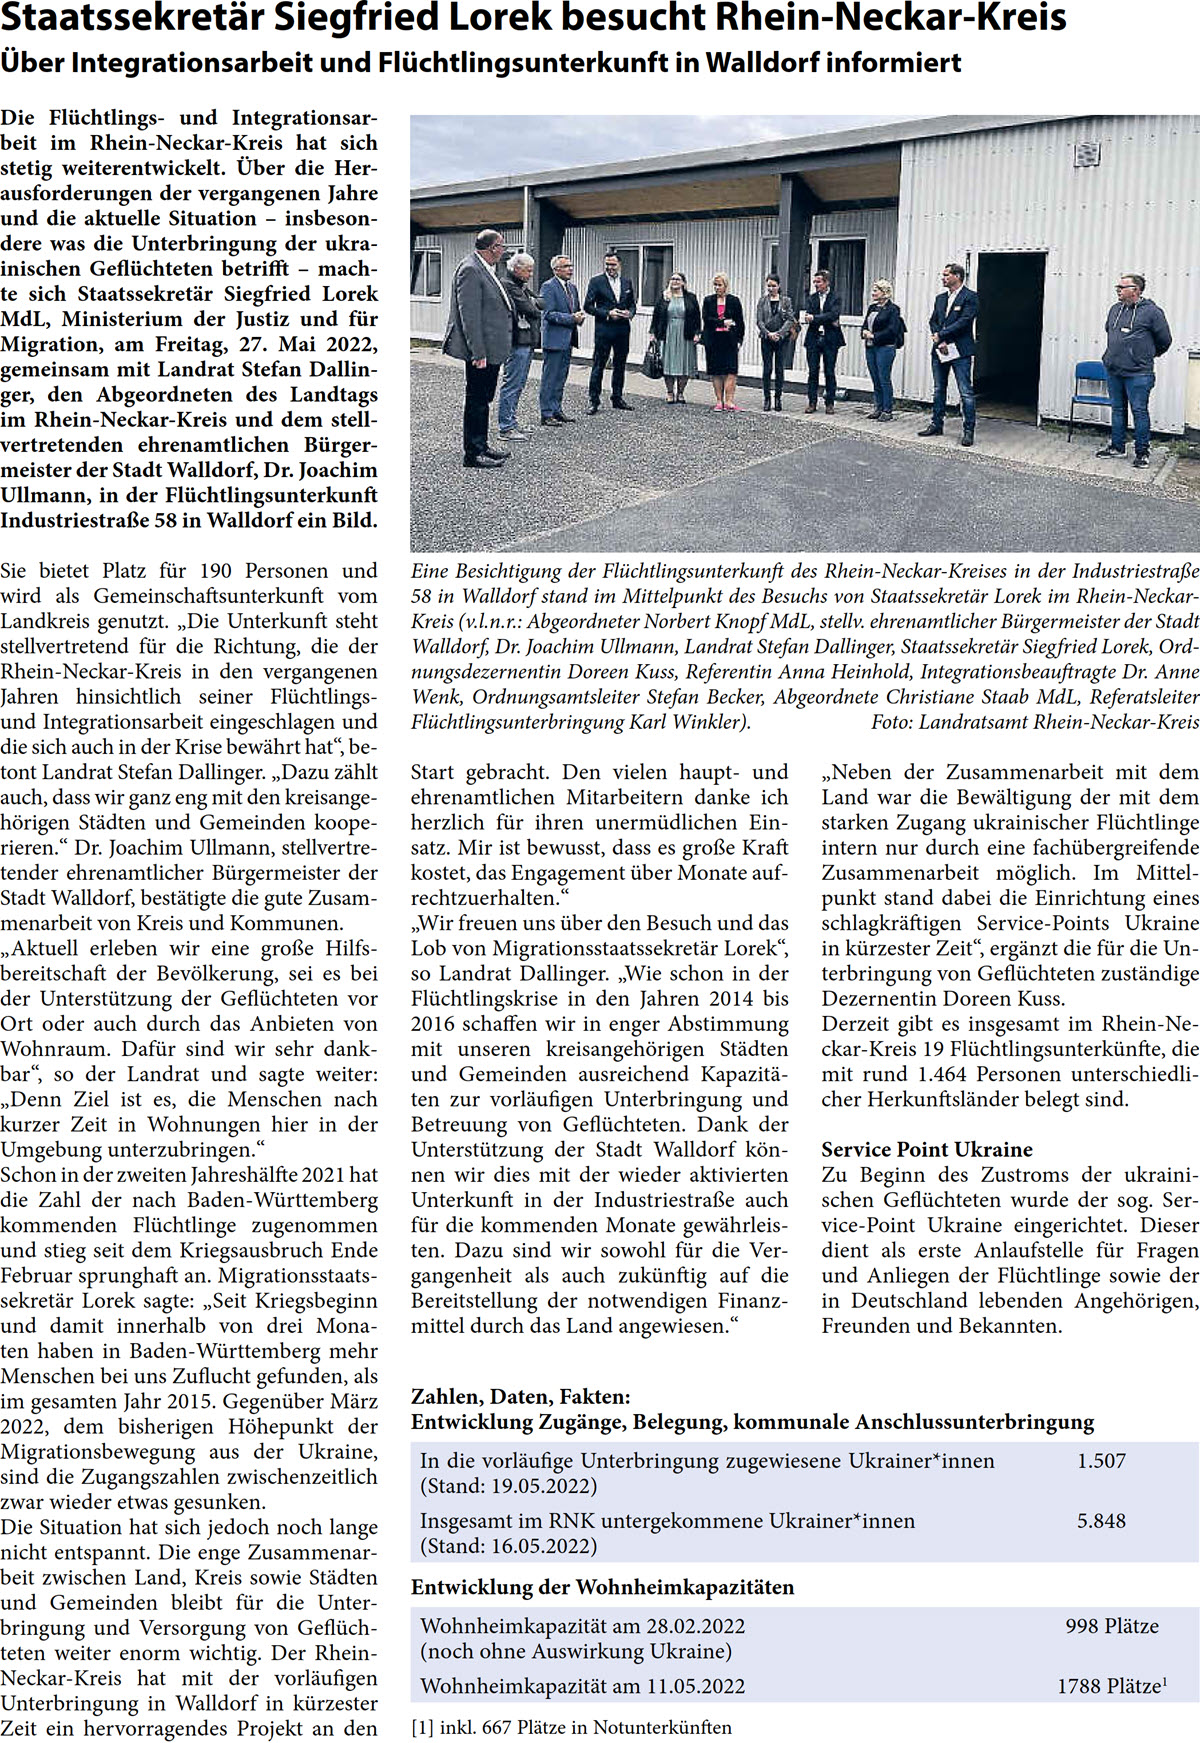 Die FlÃ¼chtlings- und Integrationsar- beit im Rhein-Neckar-Kreis hat sich  stetig weiterentwickelt. Ãœber die Her- ausforderungen der vergangenen Jahre  und die aktuelle Situation â€“ insbeson- dere was die Unterbringung der ukra- inischen GeflÃ¼chteten betrifft â€“ mach- te sich StaatssekretÃ¤r Siegfried Lorek  MdL, Ministerium der Justiz und fÃ¼r  Migration, am Freitag, 27. Mai 2022,  gemeinsam mit Landrat Stefan Dallin- ger, den Abgeordneten des Landtags  im Rhein-Neckar-Kreis und dem stell- vertretenden ehrenamtlichen BÃ¼rger- meister der Stadt Walldorf, Dr. Joachim  Ullmann, in der FlÃ¼chtlingsunterkunft  IndustriestraÃŸe 58 in Walldorf ein Bild.  Sie bietet Platz fÃ¼r 190 Personen und  wird als Gemeinschaftsunterkunft vom  Landkreis genutzt. â€žDie Unterkunft steht  stellvertretend fÃ¼r die Richtung, die der  Rhein-Neckar-Kreis in den vergangenen  Jahren hinsichtlich seiner FlÃ¼chtlings-  und Integrationsarbeit eingeschlagen und  die sich auch in der Krise bewÃ¤hrt hatâ€œ, be- tont Landrat Stefan Dallinger. â€žDazu zÃ¤hlt  auch, dass wir ganz eng mit den kreisange- hÃ¶rigen StÃ¤dten und Gemeinden koope- rieren.â€œ Dr. Joachim Ullmann, stellvertre- tender ehrenamtlicher BÃ¼rgermeister der  Stadt Walldorf, bestÃ¤tigte die gute Zusam- menarbeit von Kreis und Kommunen. â€žAktuell erleben wir eine groÃŸe Hilfs- bereitschaft der BevÃ¶lkerung, sei es bei  der UnterstÃ¼tzung der GeflÃ¼chteten vor  Ort oder auch durch das Anbieten von  Wohnraum. DafÃ¼r sind wir sehr dank- barâ€œ, so der Landrat und sagte weiter:  â€žDenn Ziel ist es, die Menschen nach  kurzer Zeit in Wohnungen hier in der  Umgebung unterzubringen.â€œ Schon in der zweiten JahreshÃ¤lfte 2021 hat  die Zahl der nach Baden-WÃ¼rttemberg  kommenden FlÃ¼chtlinge zugenommen  und stieg seit dem Kriegsausbruch Ende  Februar sprunghaft an. Migrationsstaats- sekretÃ¤r Lorek sagte: â€žSeit Kriegsbeginn  und damit innerhalb von drei Mona- ten haben in Baden-WÃ¼rttemberg mehr  Menschen bei uns Zuflucht gefunden, als  im gesamten Jahr 2015. GegenÃ¼ber MÃ¤rz  2022, dem bisherigen HÃ¶hepunkt der  Migrationsbewegung aus der Ukraine,  sind die Zugangszahlen zwischenzeitlich  zwar wieder etwas gesunken.  Die Situation hat sich jedoch noch lange  nicht entspannt. Die enge Zusammenar- beit zwischen Land, Kreis sowie StÃ¤dten  und Gemeinden bleibt fÃ¼r die Unter- bringung und Versorgung von GeflÃ¼ch- teten weiter enorm wichtig. Der Rhein- Neckar-Kreis hat mit der vorlÃ¤ufigen  Unterbringung in Walldorf in kÃ¼rzester  Zeit ein hervorragendes Projekt an den   Start gebracht. Den vielen haupt- und  ehrenamtlichen Mitarbeitern danke ich  herzlich fÃ¼r ihren unermÃ¼dlichen Ein- satz. Mir ist bewusst, dass es groÃŸe Kraft  kostet, das Engagement Ã¼ber Monate auf- rechtzuerhalten.â€œ â€žWir freuen uns Ã¼ber den Besuch und das  Lob von MigrationsstaatssekretÃ¤r Lorekâ€œ,  so Landrat Dallinger. â€žWie schon in der  FlÃ¼chtlingskrise in den Jahren 2014 bis  2016 schaffen wir in enger Abstimmung  mit unseren kreisangehÃ¶rigen StÃ¤dten  und Gemeinden ausreichend KapazitÃ¤- ten zur vorlÃ¤ufigen Unterbringung und  Betreuung von GeflÃ¼chteten. Dank der  UnterstÃ¼tzung der Stadt Walldorf kÃ¶n- nen wir dies mit der wieder aktivierten  Unterkunft in der IndustriestraÃŸe auch  fÃ¼r die kommenden Monate gewÃ¤hrleis- ten. Dazu sind wir sowohl fÃ¼r die Ver- gangenheit als auch zukÃ¼nftig auf die  Bereitstellung der notwendigen Finanz- mittel durch das Land angewiesen.â€œ  â€žNeben der Zusammenarbeit mit dem  Land war die BewÃ¤ltigung der mit dem  starken Zugang ukrainischer FlÃ¼chtlinge  intern nur durch eine fachÃ¼bergreifende  Zusammenarbeit mÃ¶glich. Im Mittel- punkt stand dabei die Einrichtung eines  schlagkrÃ¤ftigen Service-Points Ukraine  in kÃ¼rzester Zeitâ€œ, ergÃ¤nzt die fÃ¼r die Un- terbringung von GeflÃ¼chteten zustÃ¤ndige  Dezernentin Doreen Kuss. Derzeit gibt es insgesamt im Rhein-Ne- ckar-Kreis 19 FlÃ¼chtlingsunterkÃ¼nfte, die  mit rund 1.464 Personen unterschiedli- cher HerkunftslÃ¤nder belegt sind. Service Point Ukraine Zu Beginn des Zustroms der ukraini- schen GeflÃ¼chteten wurde der sog. Ser- vice-Point Ukraine eingerichtet. Dieser  dient als erste Anlaufstelle fÃ¼r Fragen  und Anliegen der FlÃ¼chtlinge sowie der  in Deutschland lebenden AngehÃ¶rigen,  Freunden und Bekannten.  Eine Besichtigung der FlÃ¼chtlingsunterkunft des Rhein-Neckar-Kreises in der IndustriestraÃŸe  58 in Walldorf stand im Mittelpunkt des Besuchs von StaatssekretÃ¤r Lorek im Rhein-Neckar- Kreis (v.l.n.r.: Abgeordneter Norbert Knopf MdL, stellv. ehrenamtlicher BÃ¼rgermeister der Stadt  Walldorf, Dr. Joachim Ullmann, Landrat Stefan Dallinger, StaatssekretÃ¤r Siegfried Lorek, Ord- nungsdezernentin Doreen Kuss, Referentin Anna Heinhold, Integrationsbeauftragte Dr. Anne  Wenk, Ordnungsamtsleiter Stefan Becker, Abgeordnete Christiane Staab MdL, Referatsleiter  FlÃ¼chtlingsunterbringung Karl Winkler). Foto: Landratsamt Rhein-Neckar-Kreis  Zahlen, Daten, Fakten: Entwicklung ZugÃ¤nge, Belegung, kommunale Anschlussunterbringung  In die vorlÃ¤ufige Unterbringung zugewiesene Ukrainer*innen  (Stand: 19.05.2022)  1.507  Insgesamt im RNK untergekommene Ukrainer*innen  (Stand: 16.05.2022)  5.848  Entwicklung der WohnheimkapazitÃ¤ten WohnheimkapazitÃ¤t am 28.02.2022 (noch ohne Auswirkung Ukraine)  998 PlÃ¤tze WohnheimkapazitÃ¤t am 11.05.2022 1788 PlÃ¤tze1